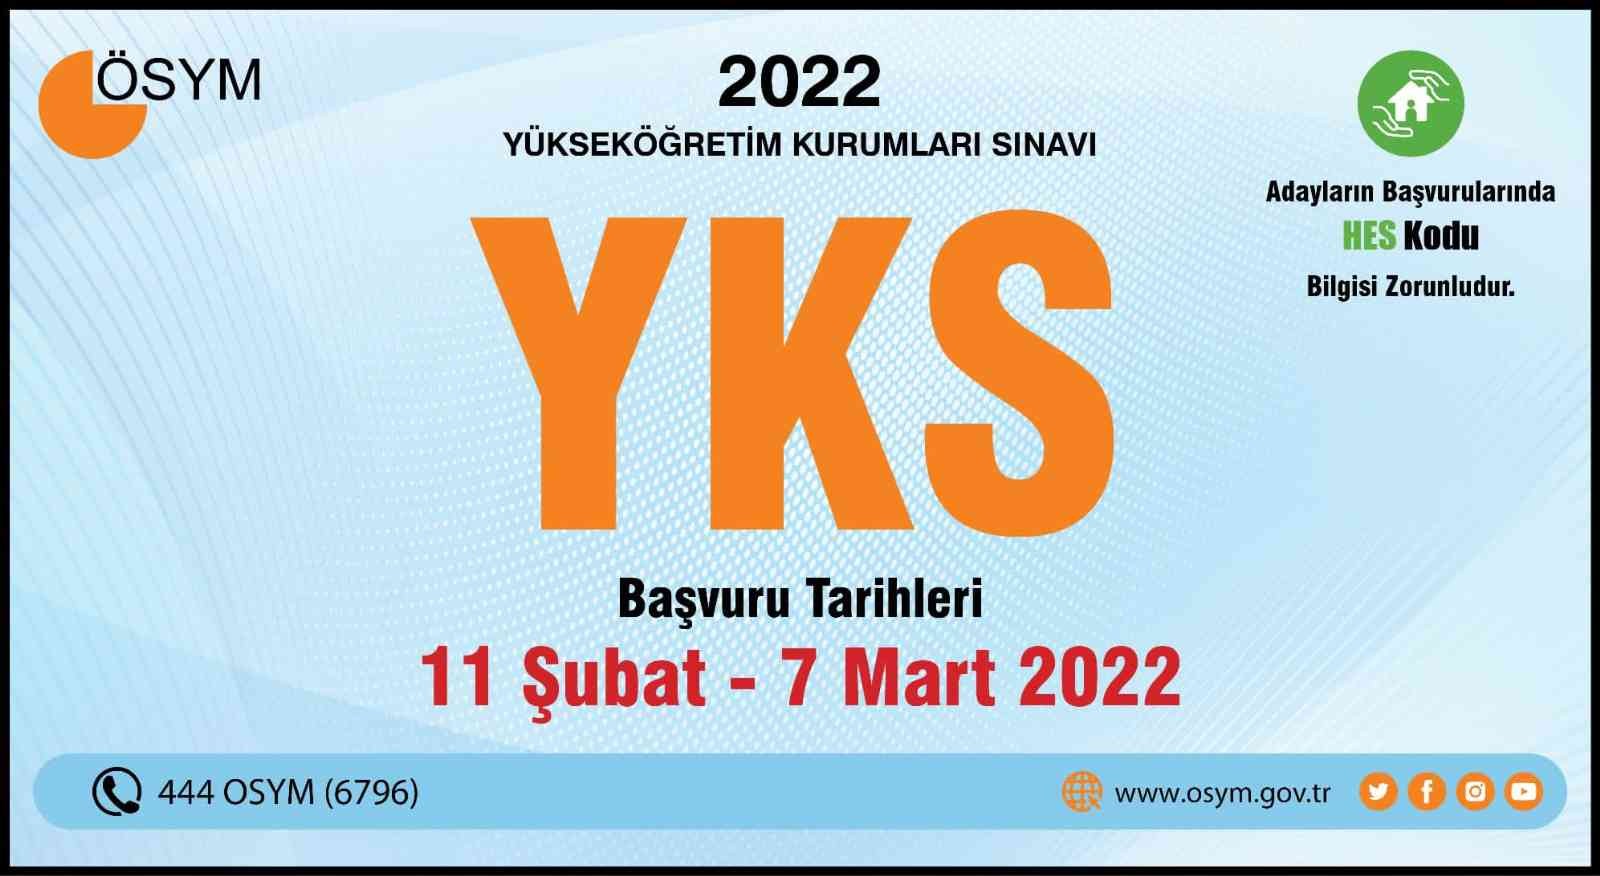 ÖSYM Başkanı Aygün: “18-19 Haziran 2022 Tarihlerinde Gerçekleştireceğimiz (2022-YKS) Başvuru Klavuzu Sitemizde Yayımlanmıştır”